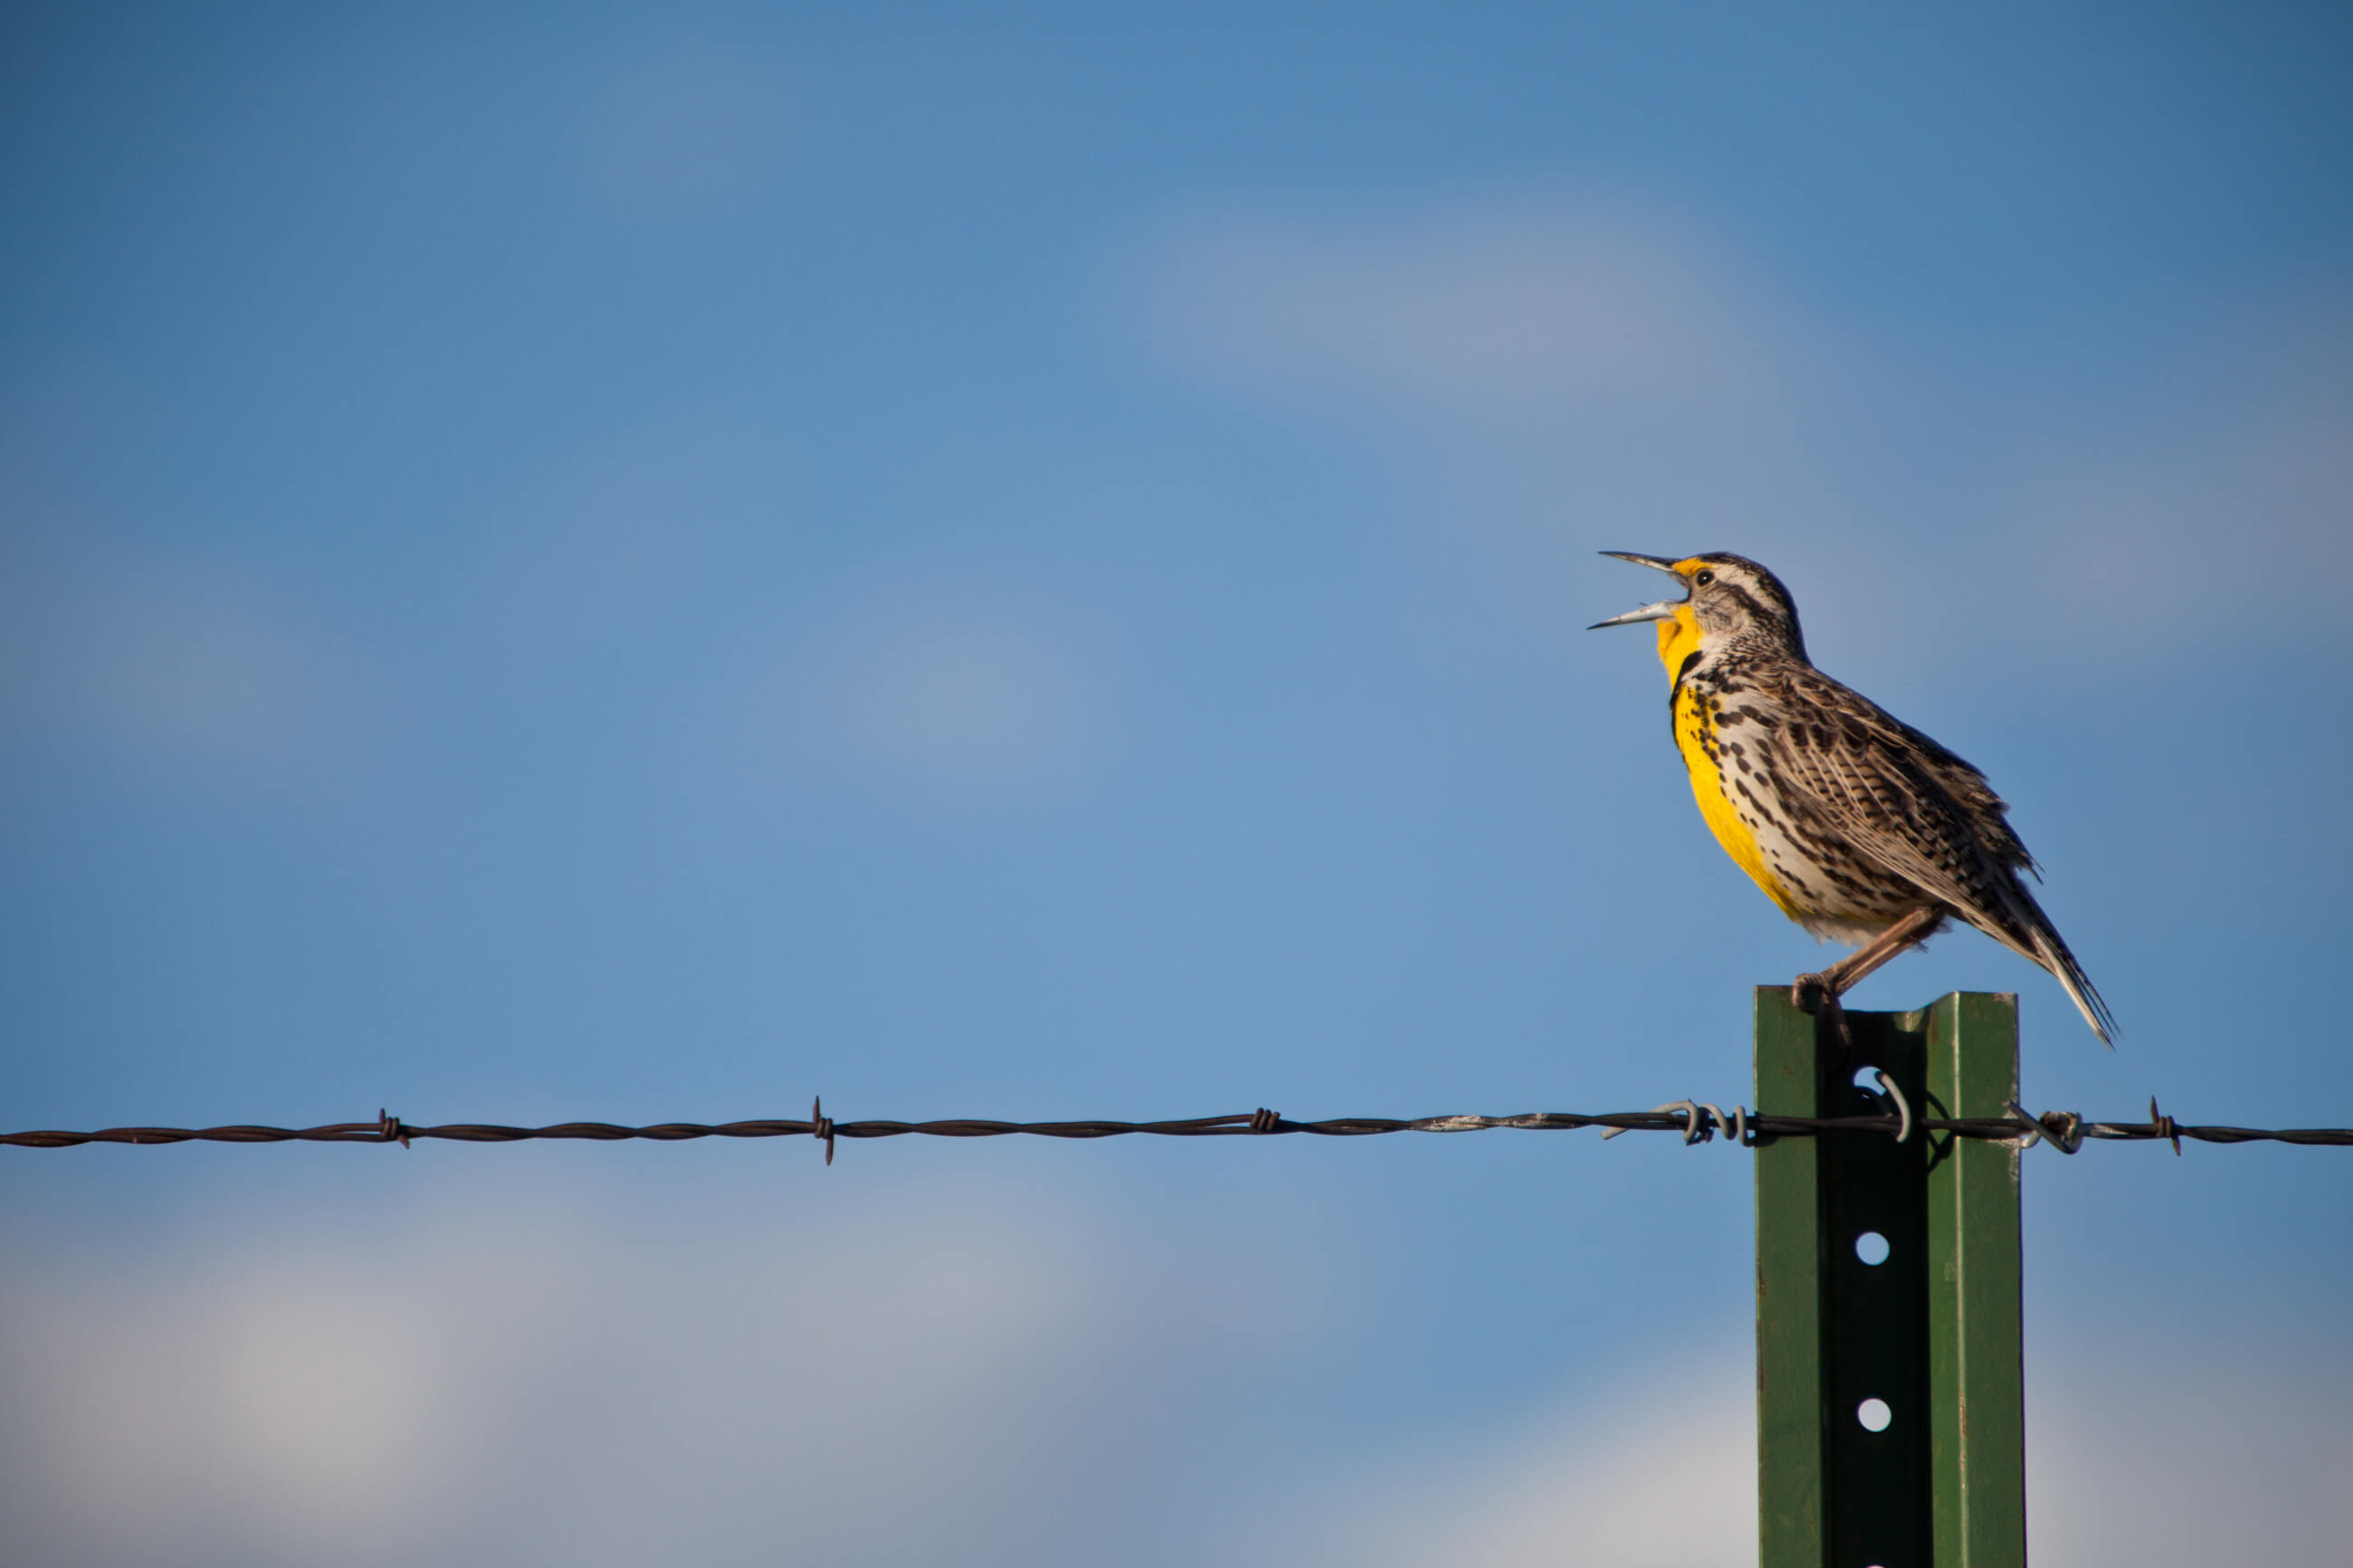 A Western Meadowlark sings on a fence post in western Montana